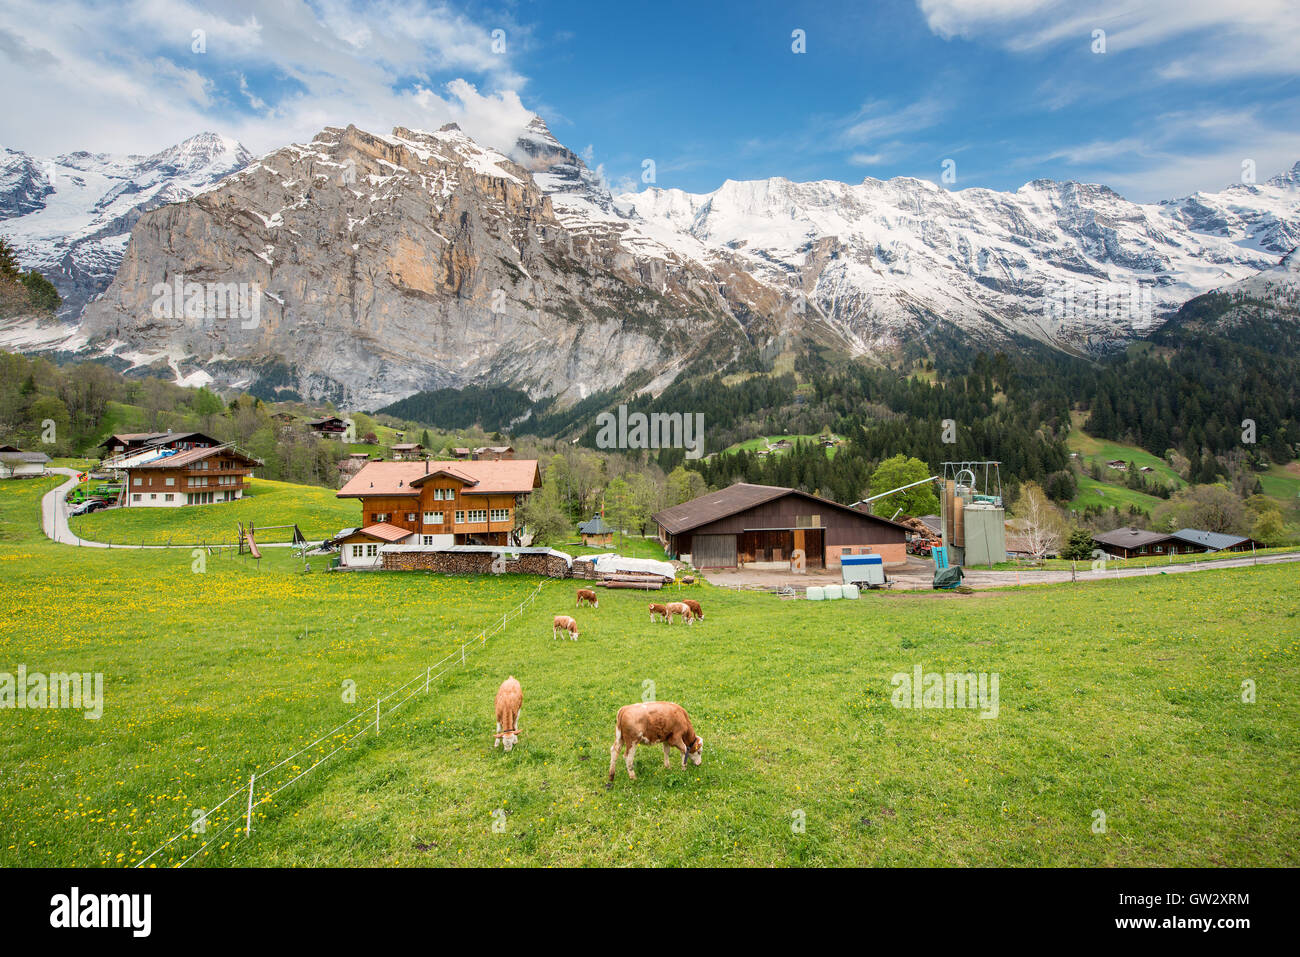 Kuh und Bauernhaus mit Schweizer Alpen Schnee Berg im Hintergrund in Grindelwald, Switzerland.Livestock Landwirtschaft in der Schweiz. Stockfoto